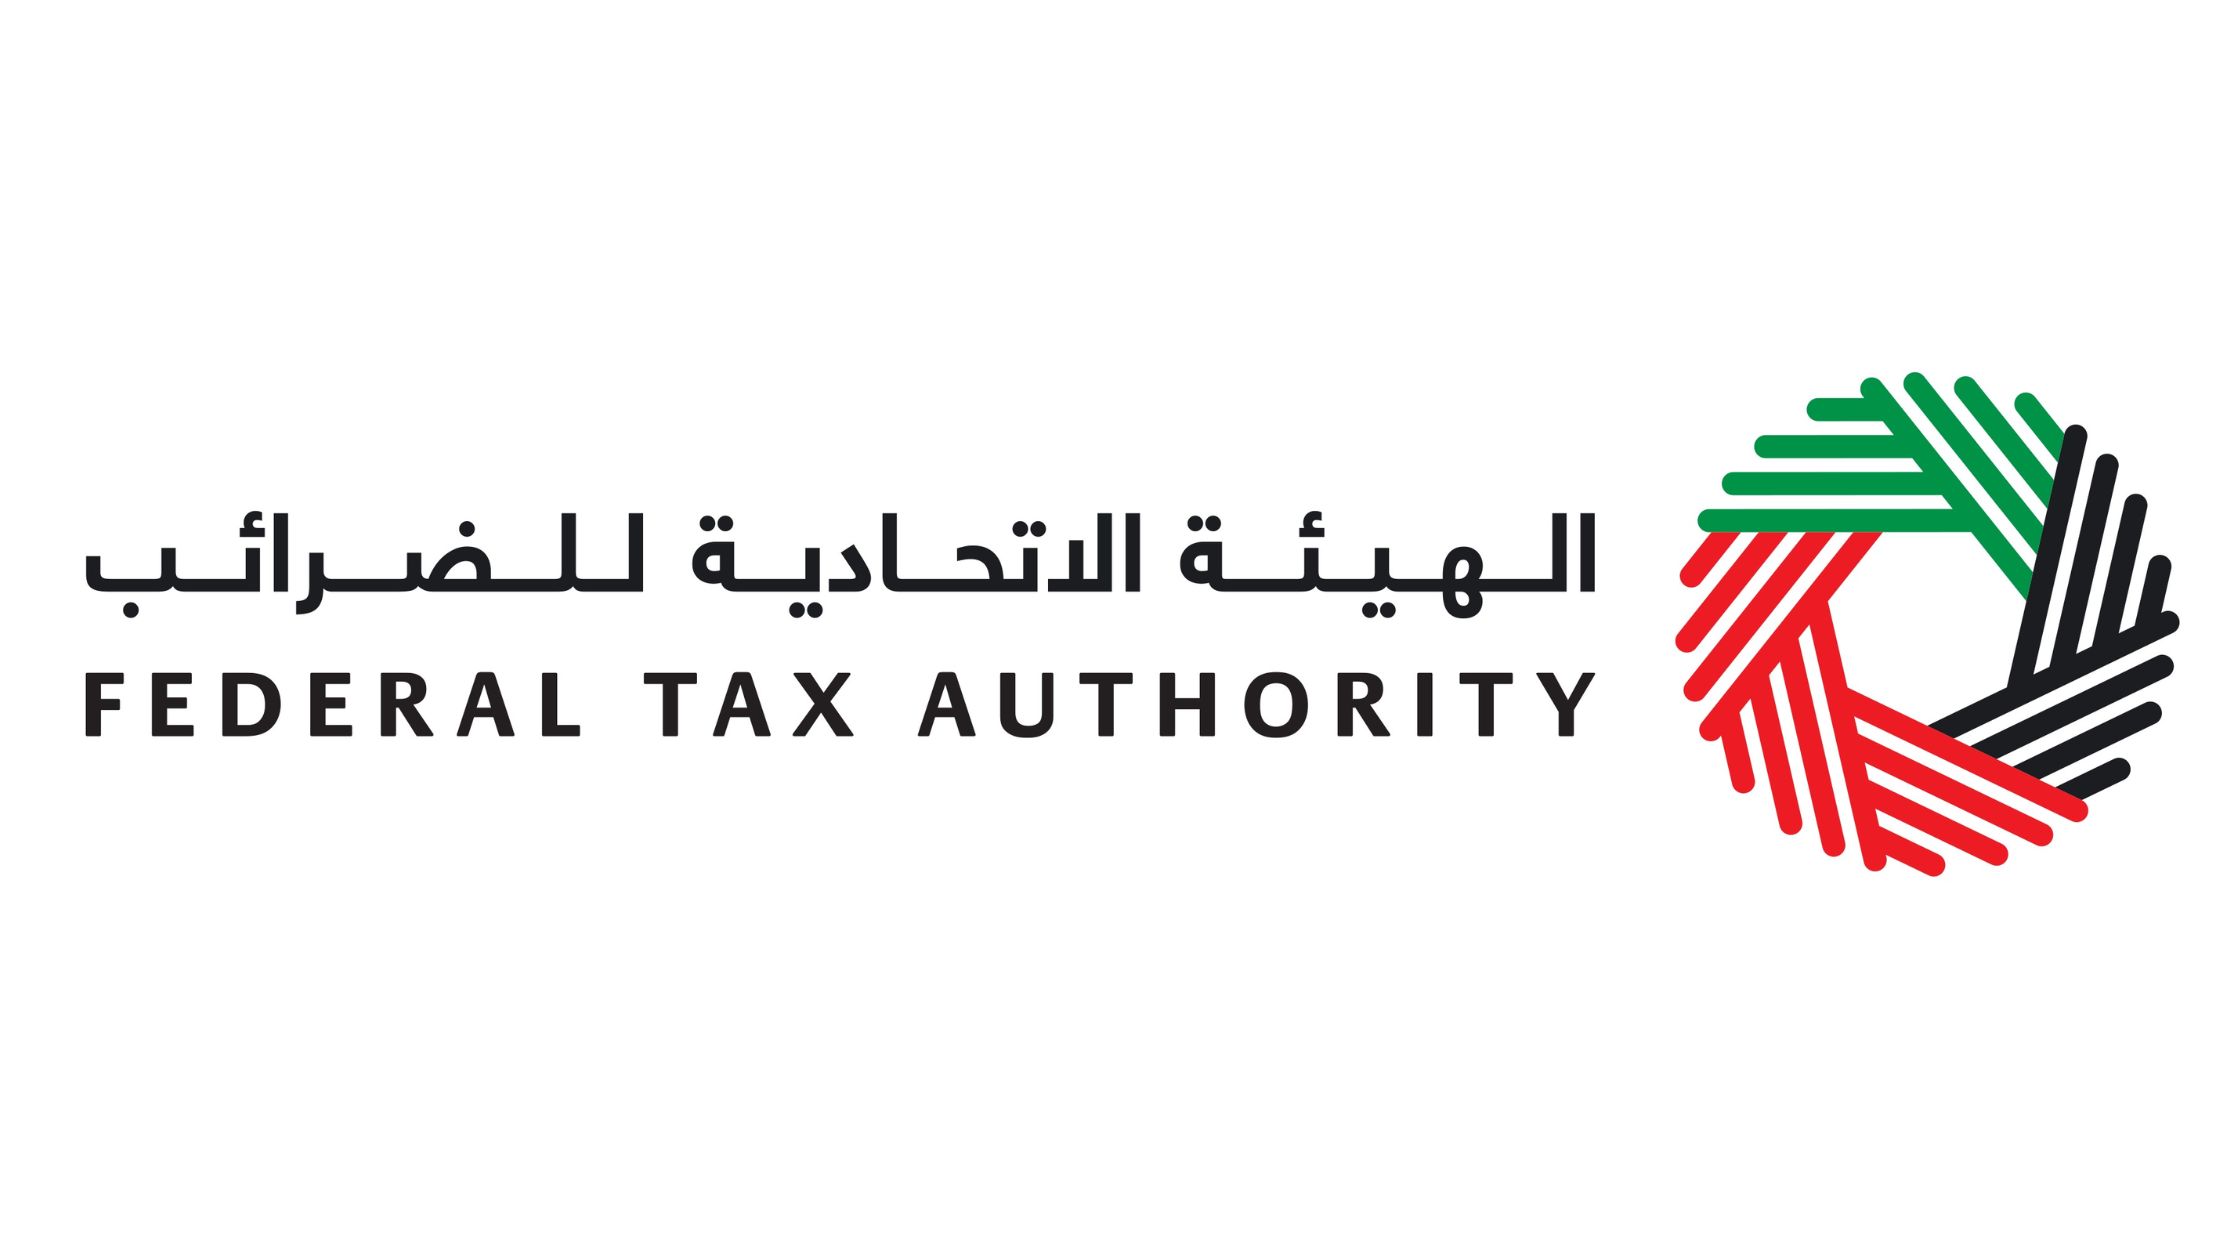 متحدہ عرب امارات نے اسٹارٹ اپس اور چھوٹی کمپنیوں کے لیے کارپوریشن ٹیکس میں کمی کا اعلان کیا۔